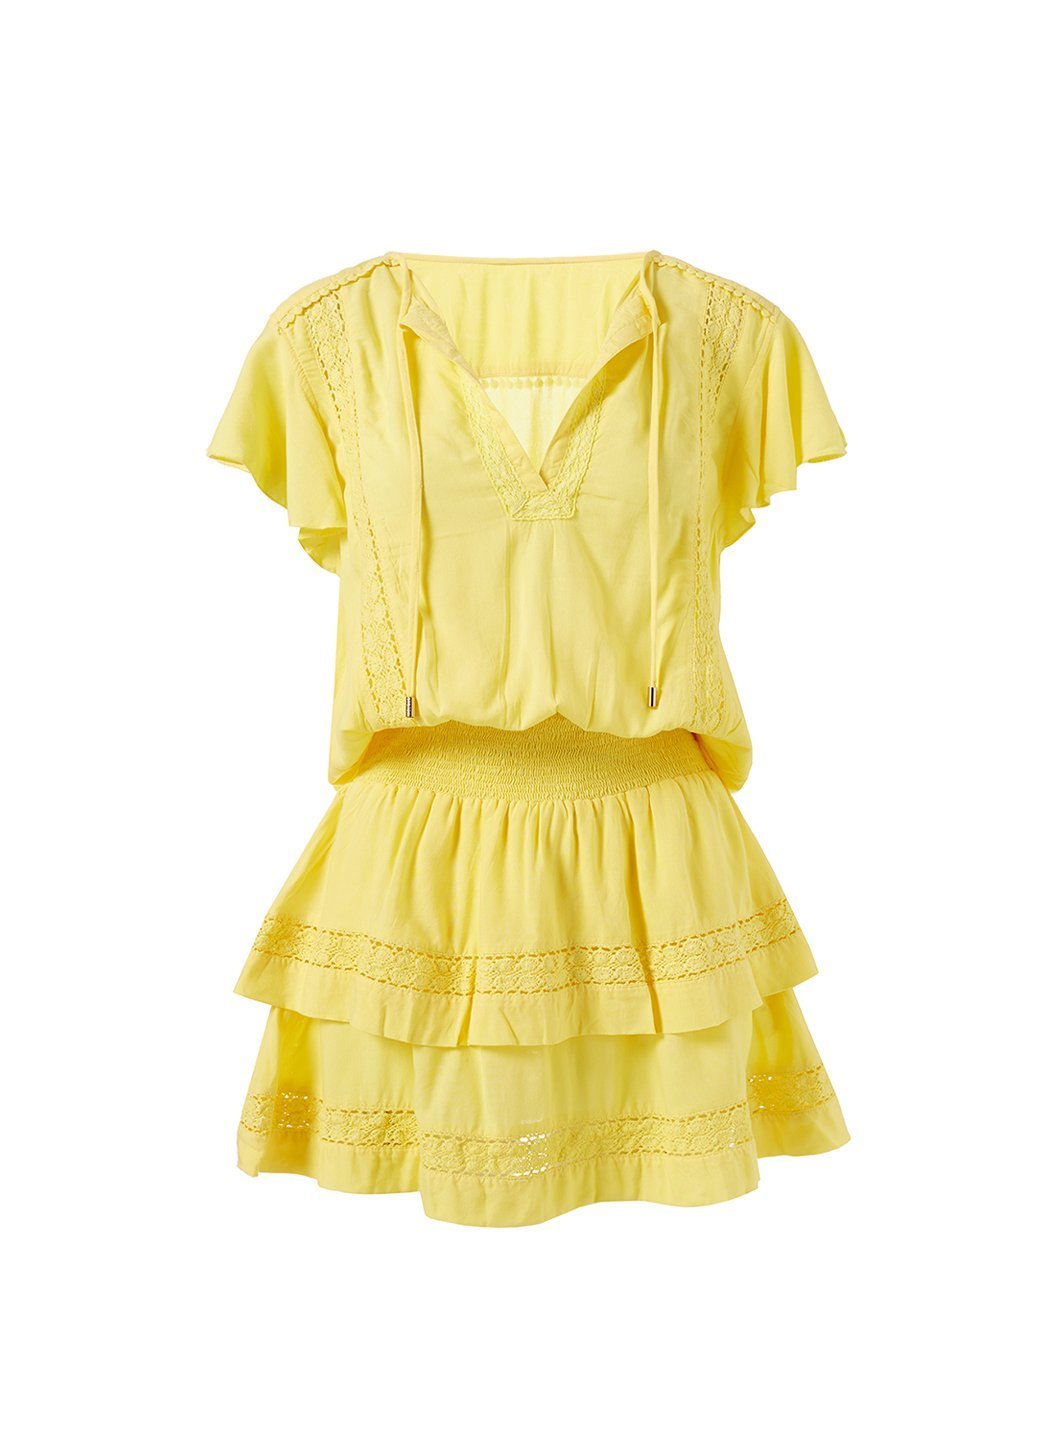 georgie yellow tiered skirt short dress